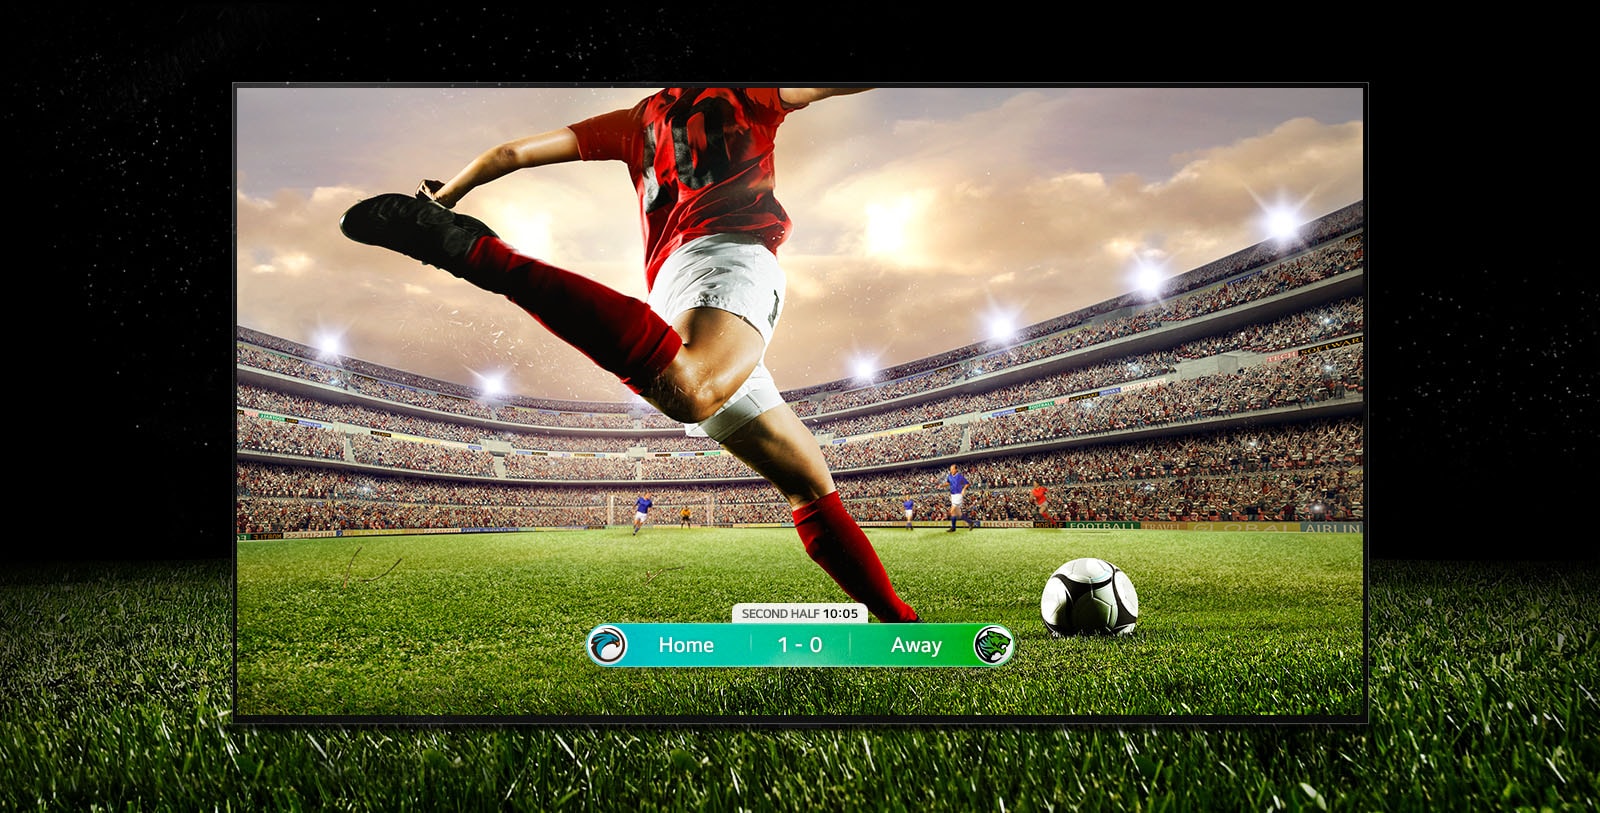 Posnetek zaslona nogometne tekme z igralcem z rdečimi črtami, ki se pripravlja brcati žogo po stadionu.  Rezultat tekme je viden na dnu zaslona.  Zelena trava z igrišča se širi iz zaslona na črno ozadje.